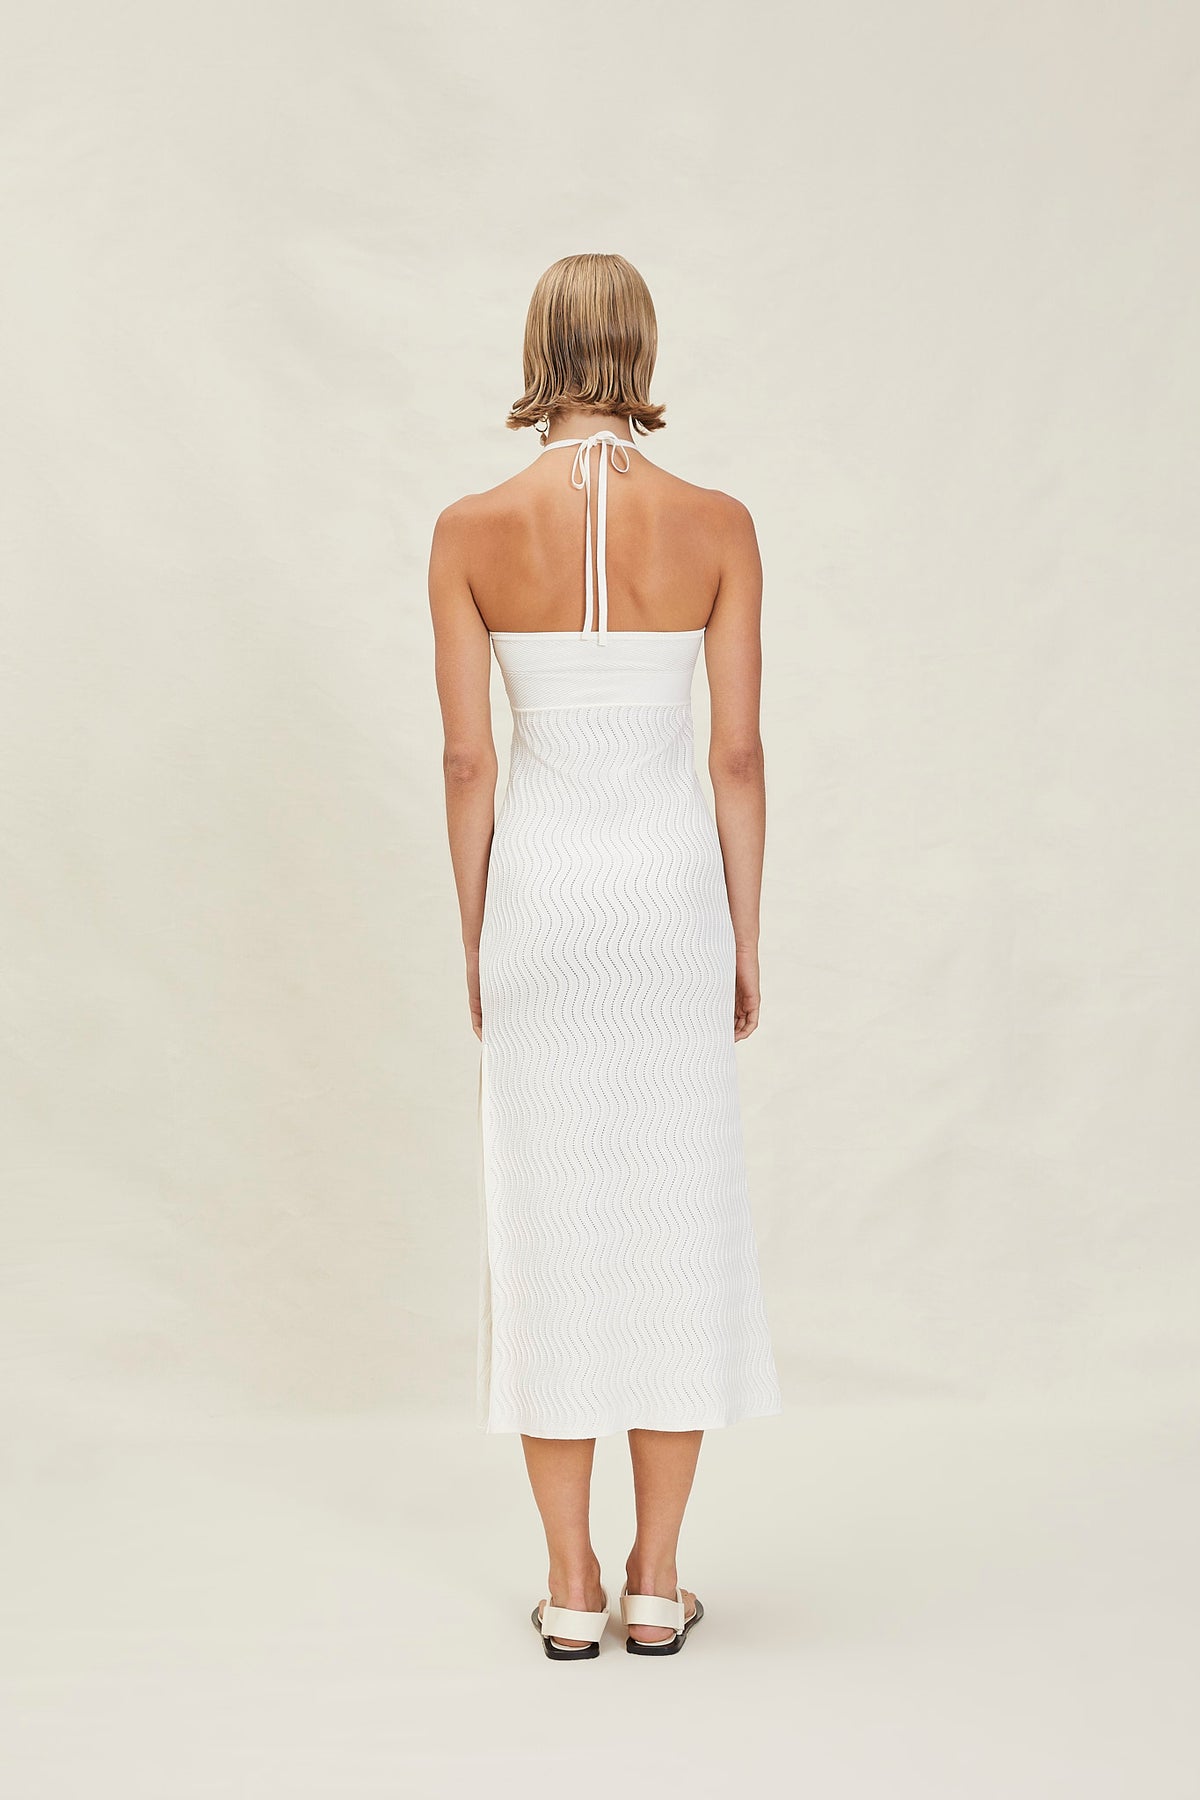 Clementine Midi Dress - Off-White